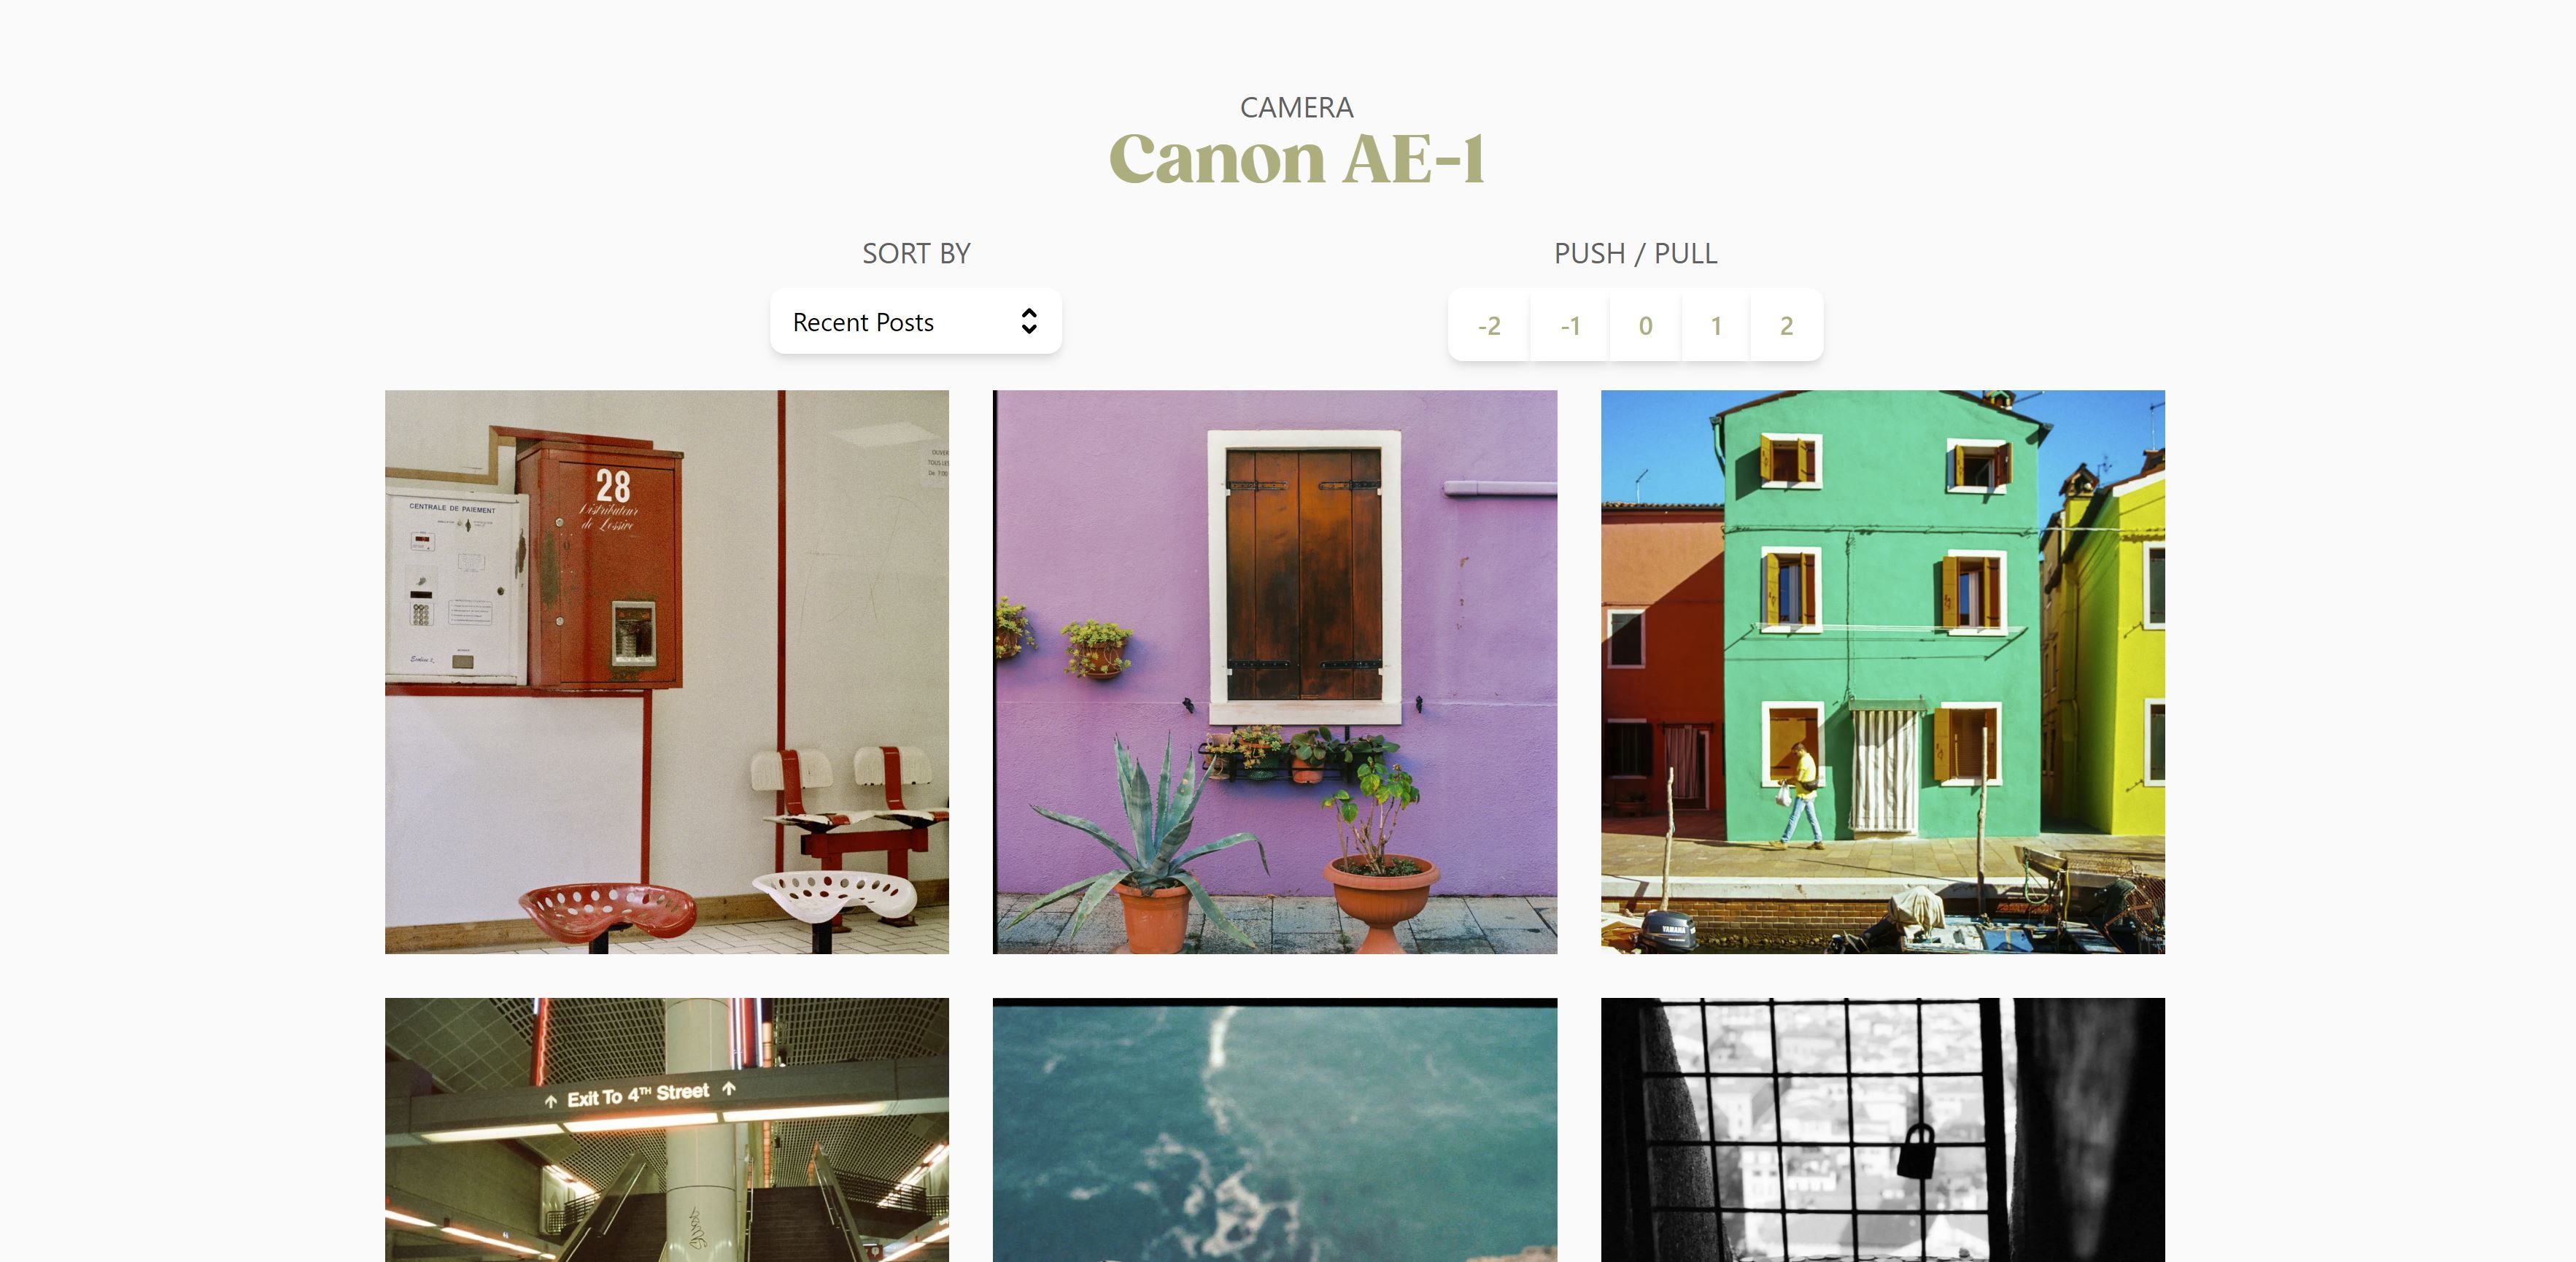 halaman hasil pencarian untuk kamera film canon ae 1 di situs desktop grainy